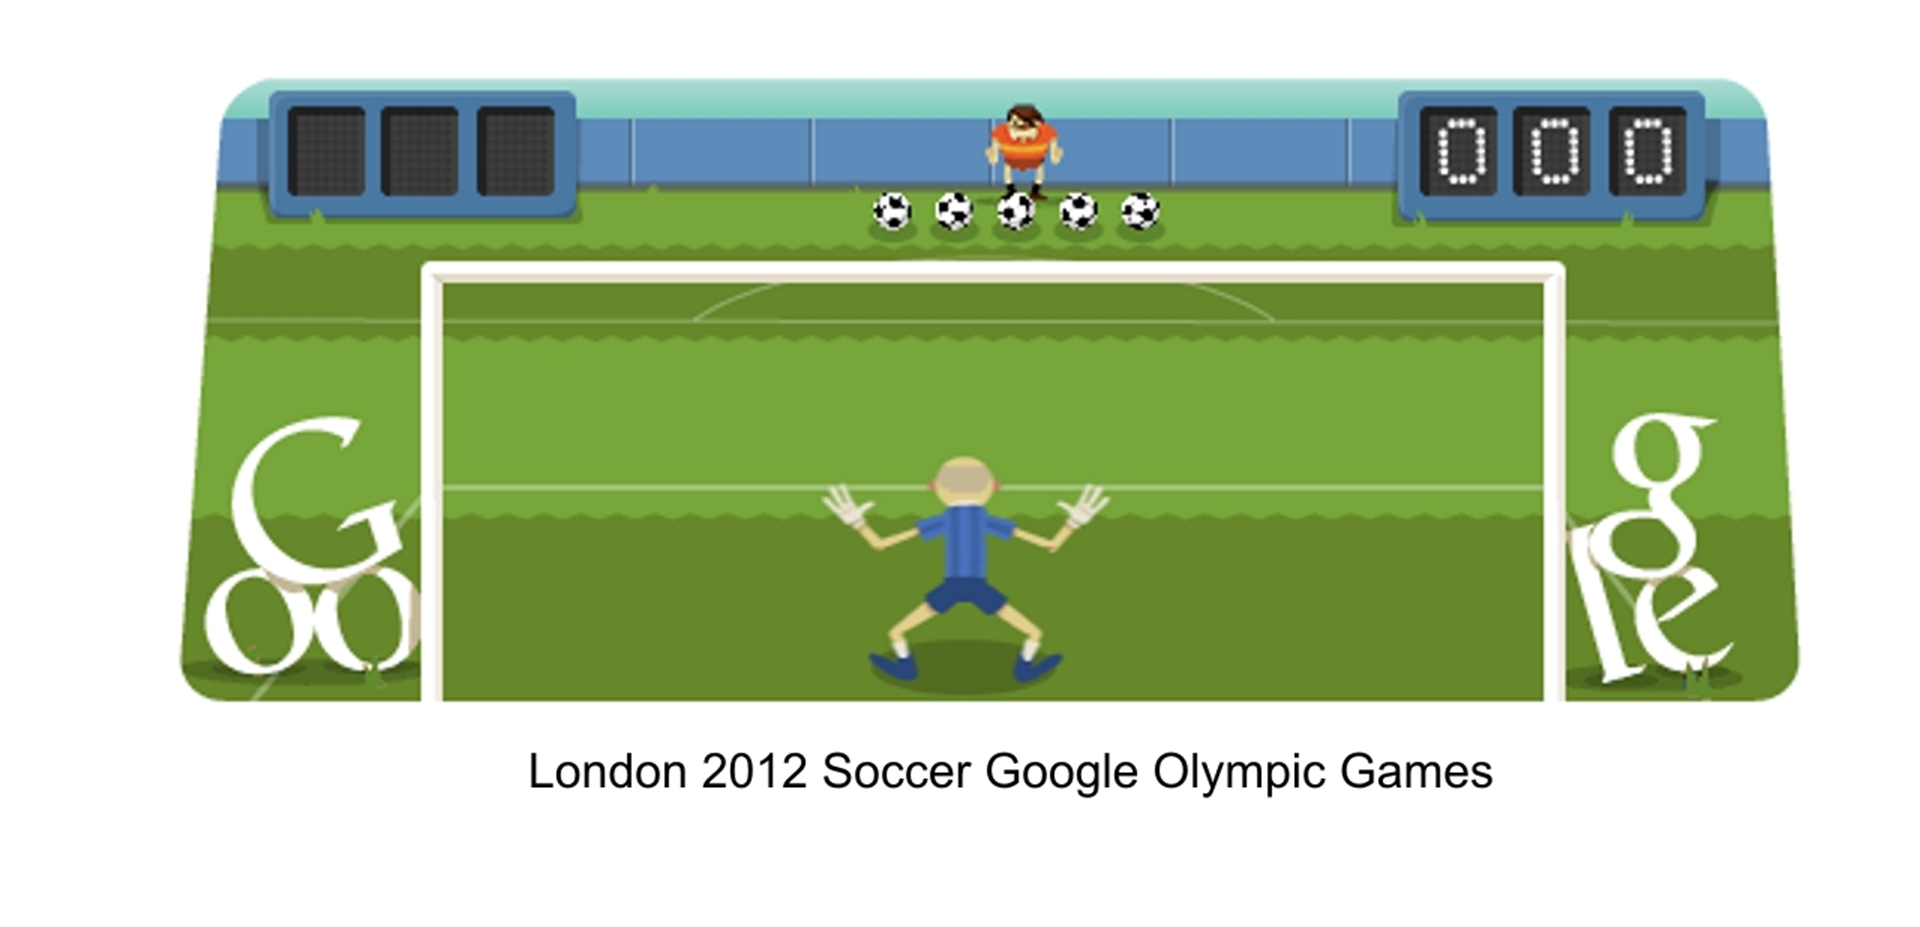 London 2012 Soccer